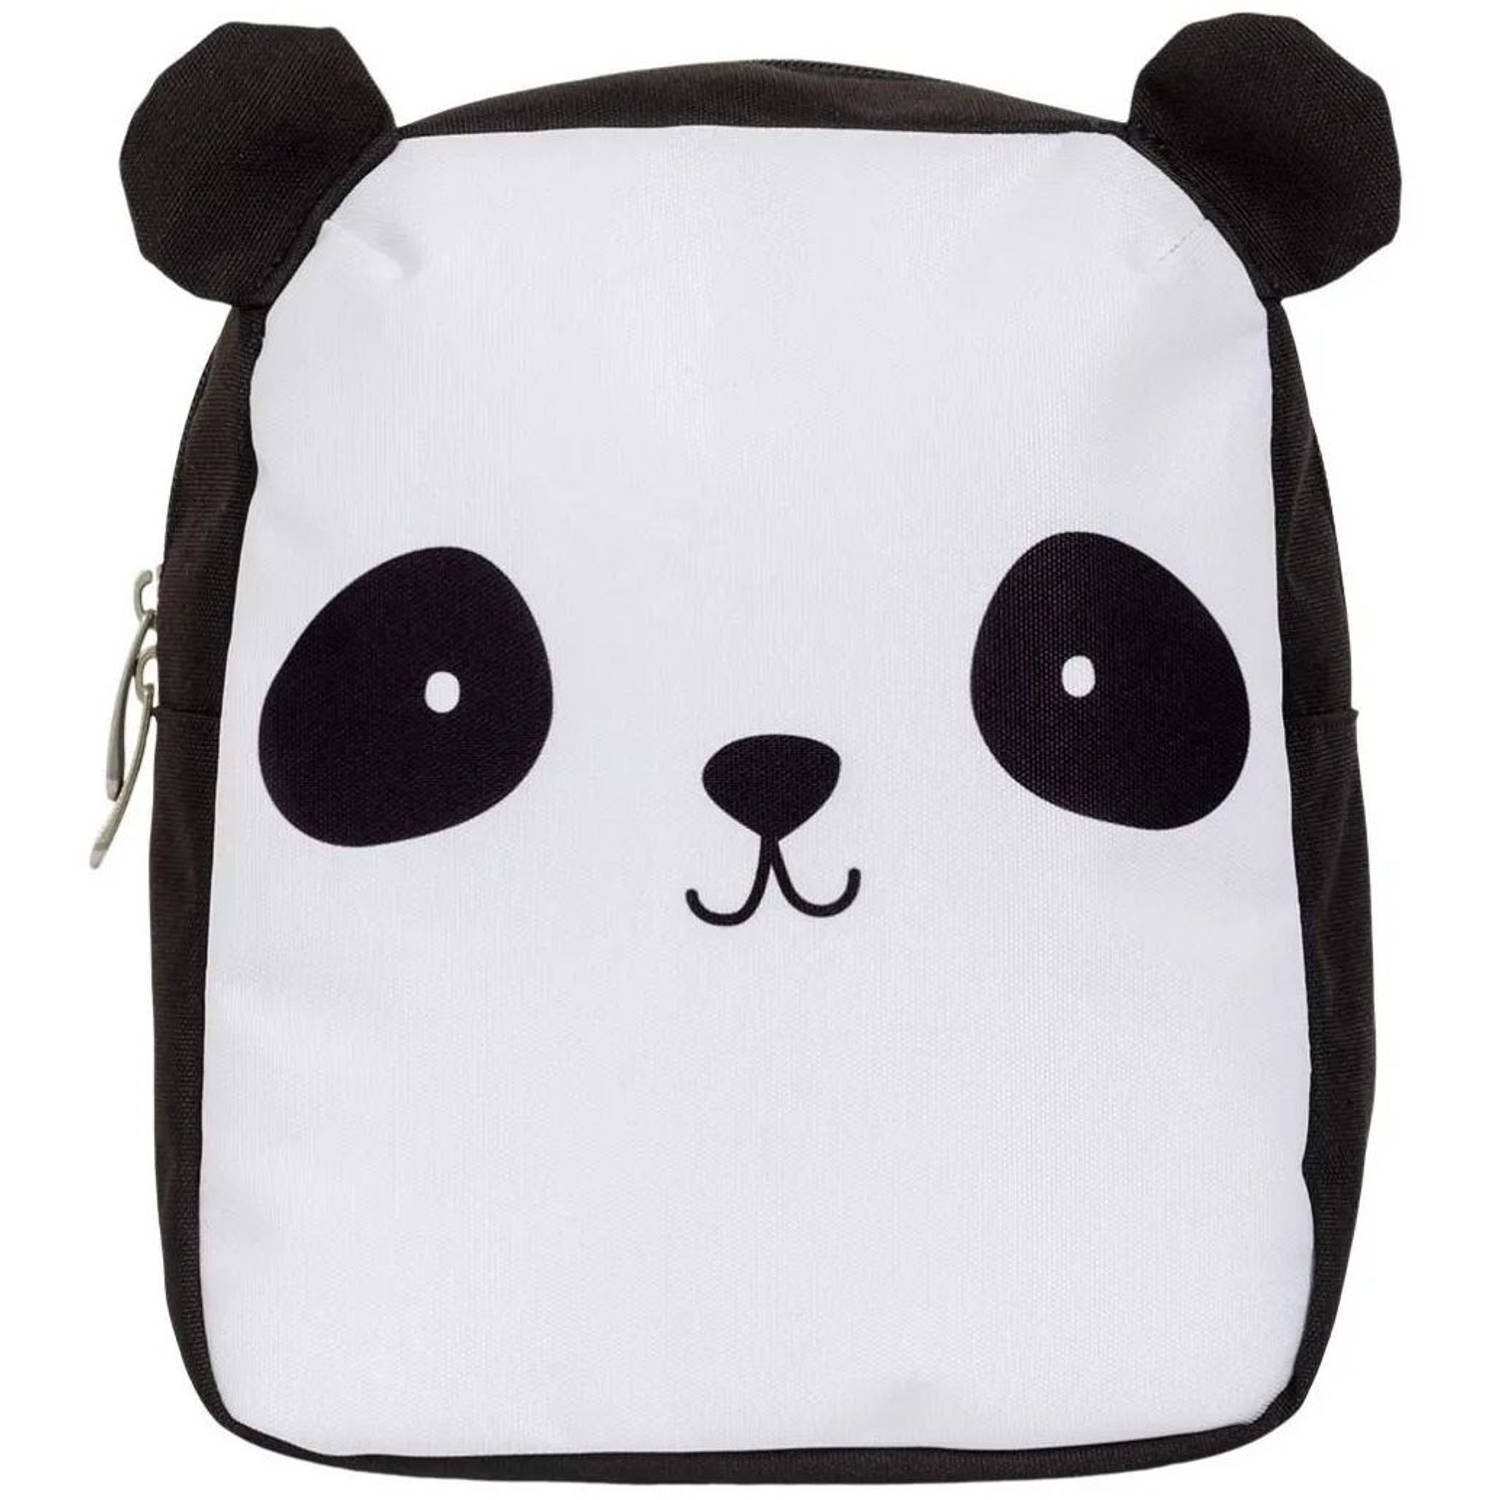 Little Lovely rugzak Panda junior 5,5 liter polyester zwart-wit